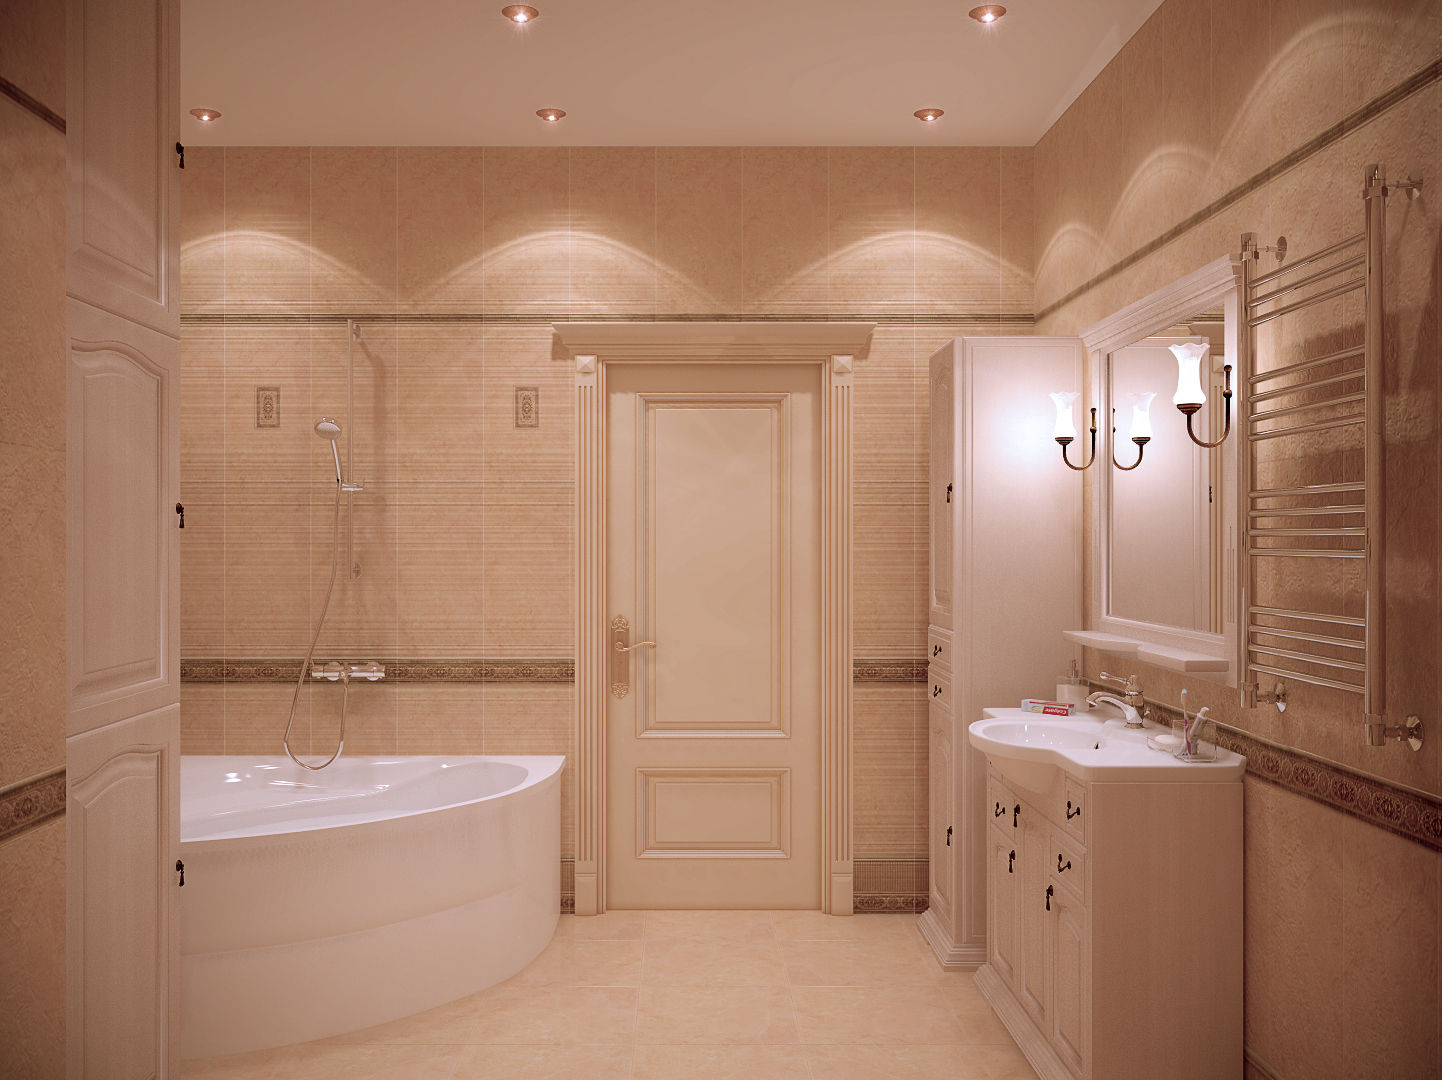 Дизайн санузла в классическом стиле в квартире в ЖК "Ливанский дом", г.Краснодар, Студия интерьерного дизайна happy.design Студия интерьерного дизайна happy.design Bathroom